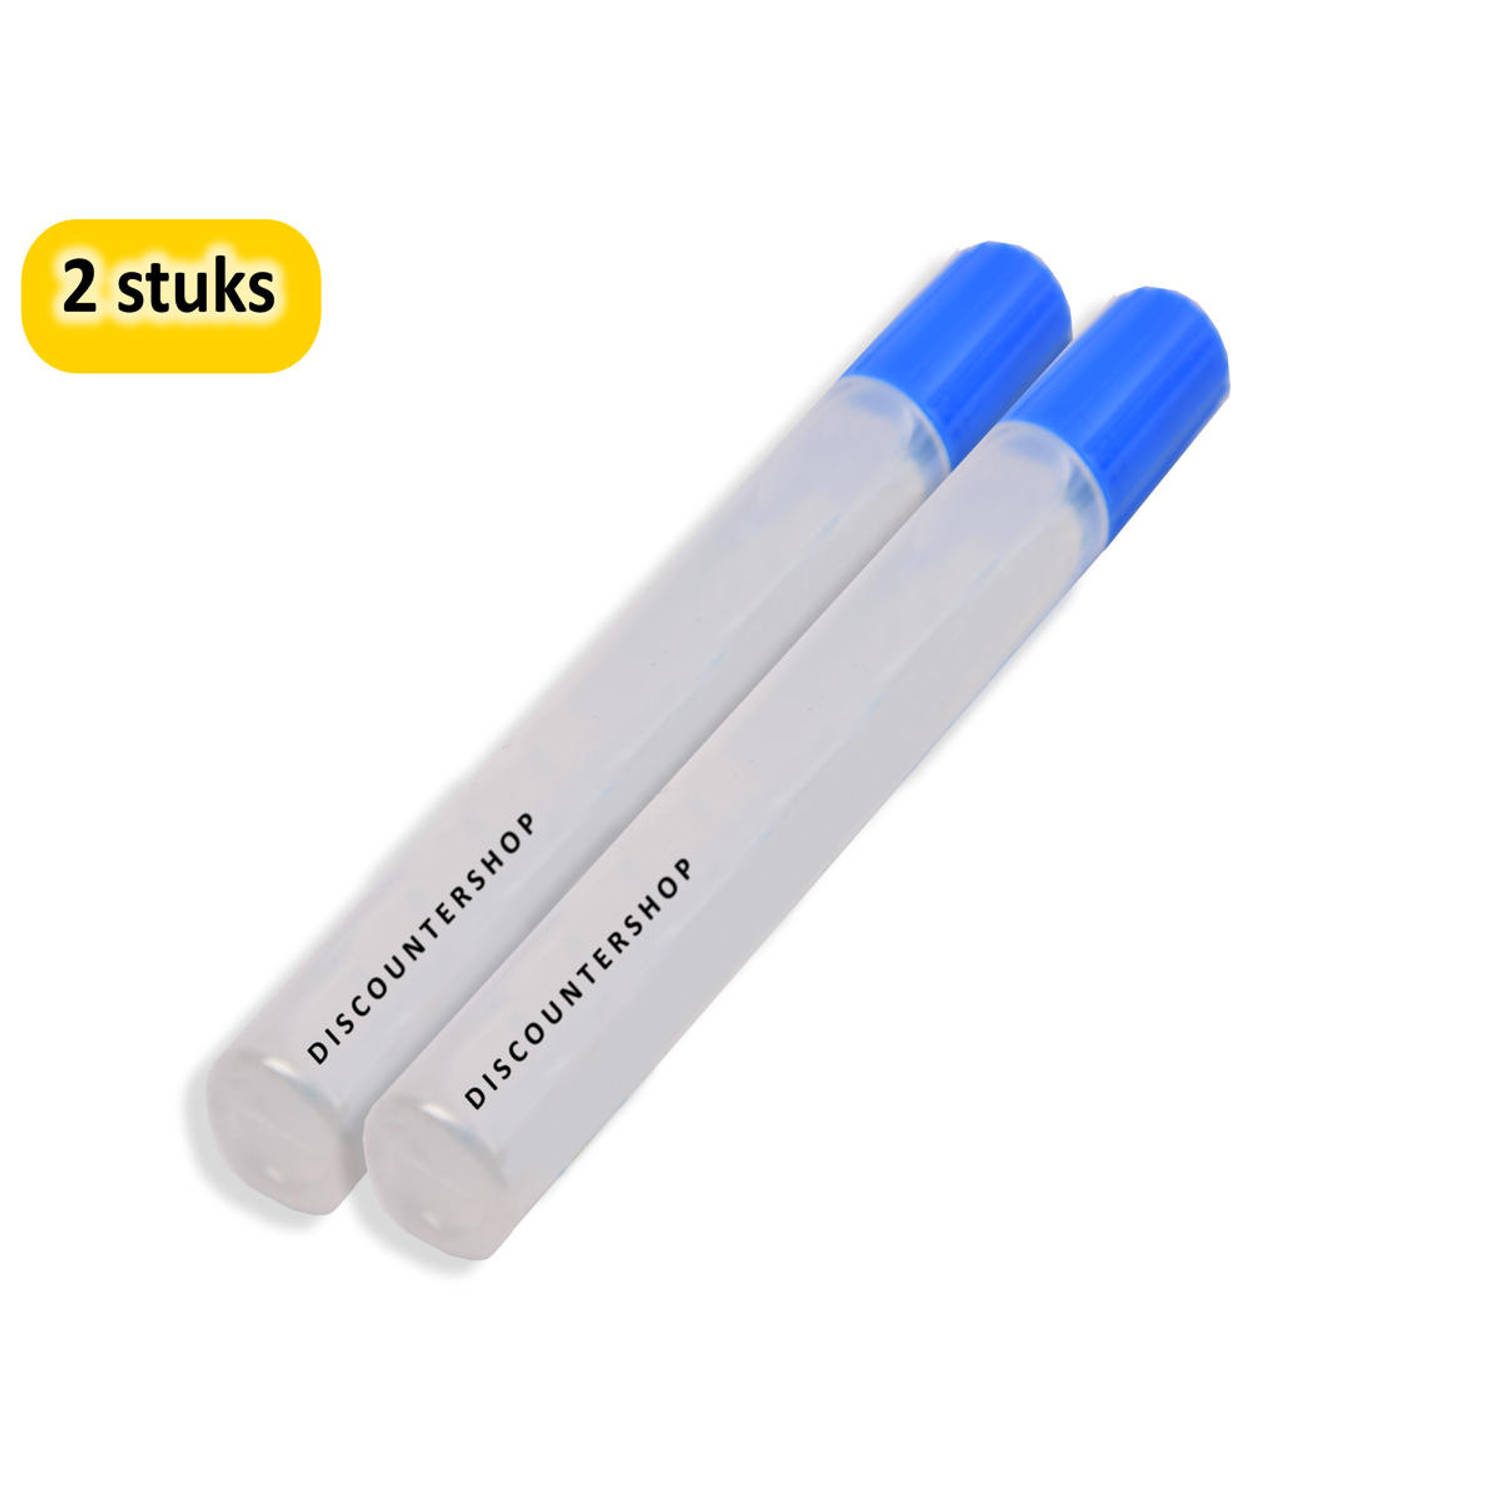 Hobbylijm Glue Pen 50 Gram 2 stuks in de verpakking - Voor Precisiewerk en Handige Lijmtoepassingen